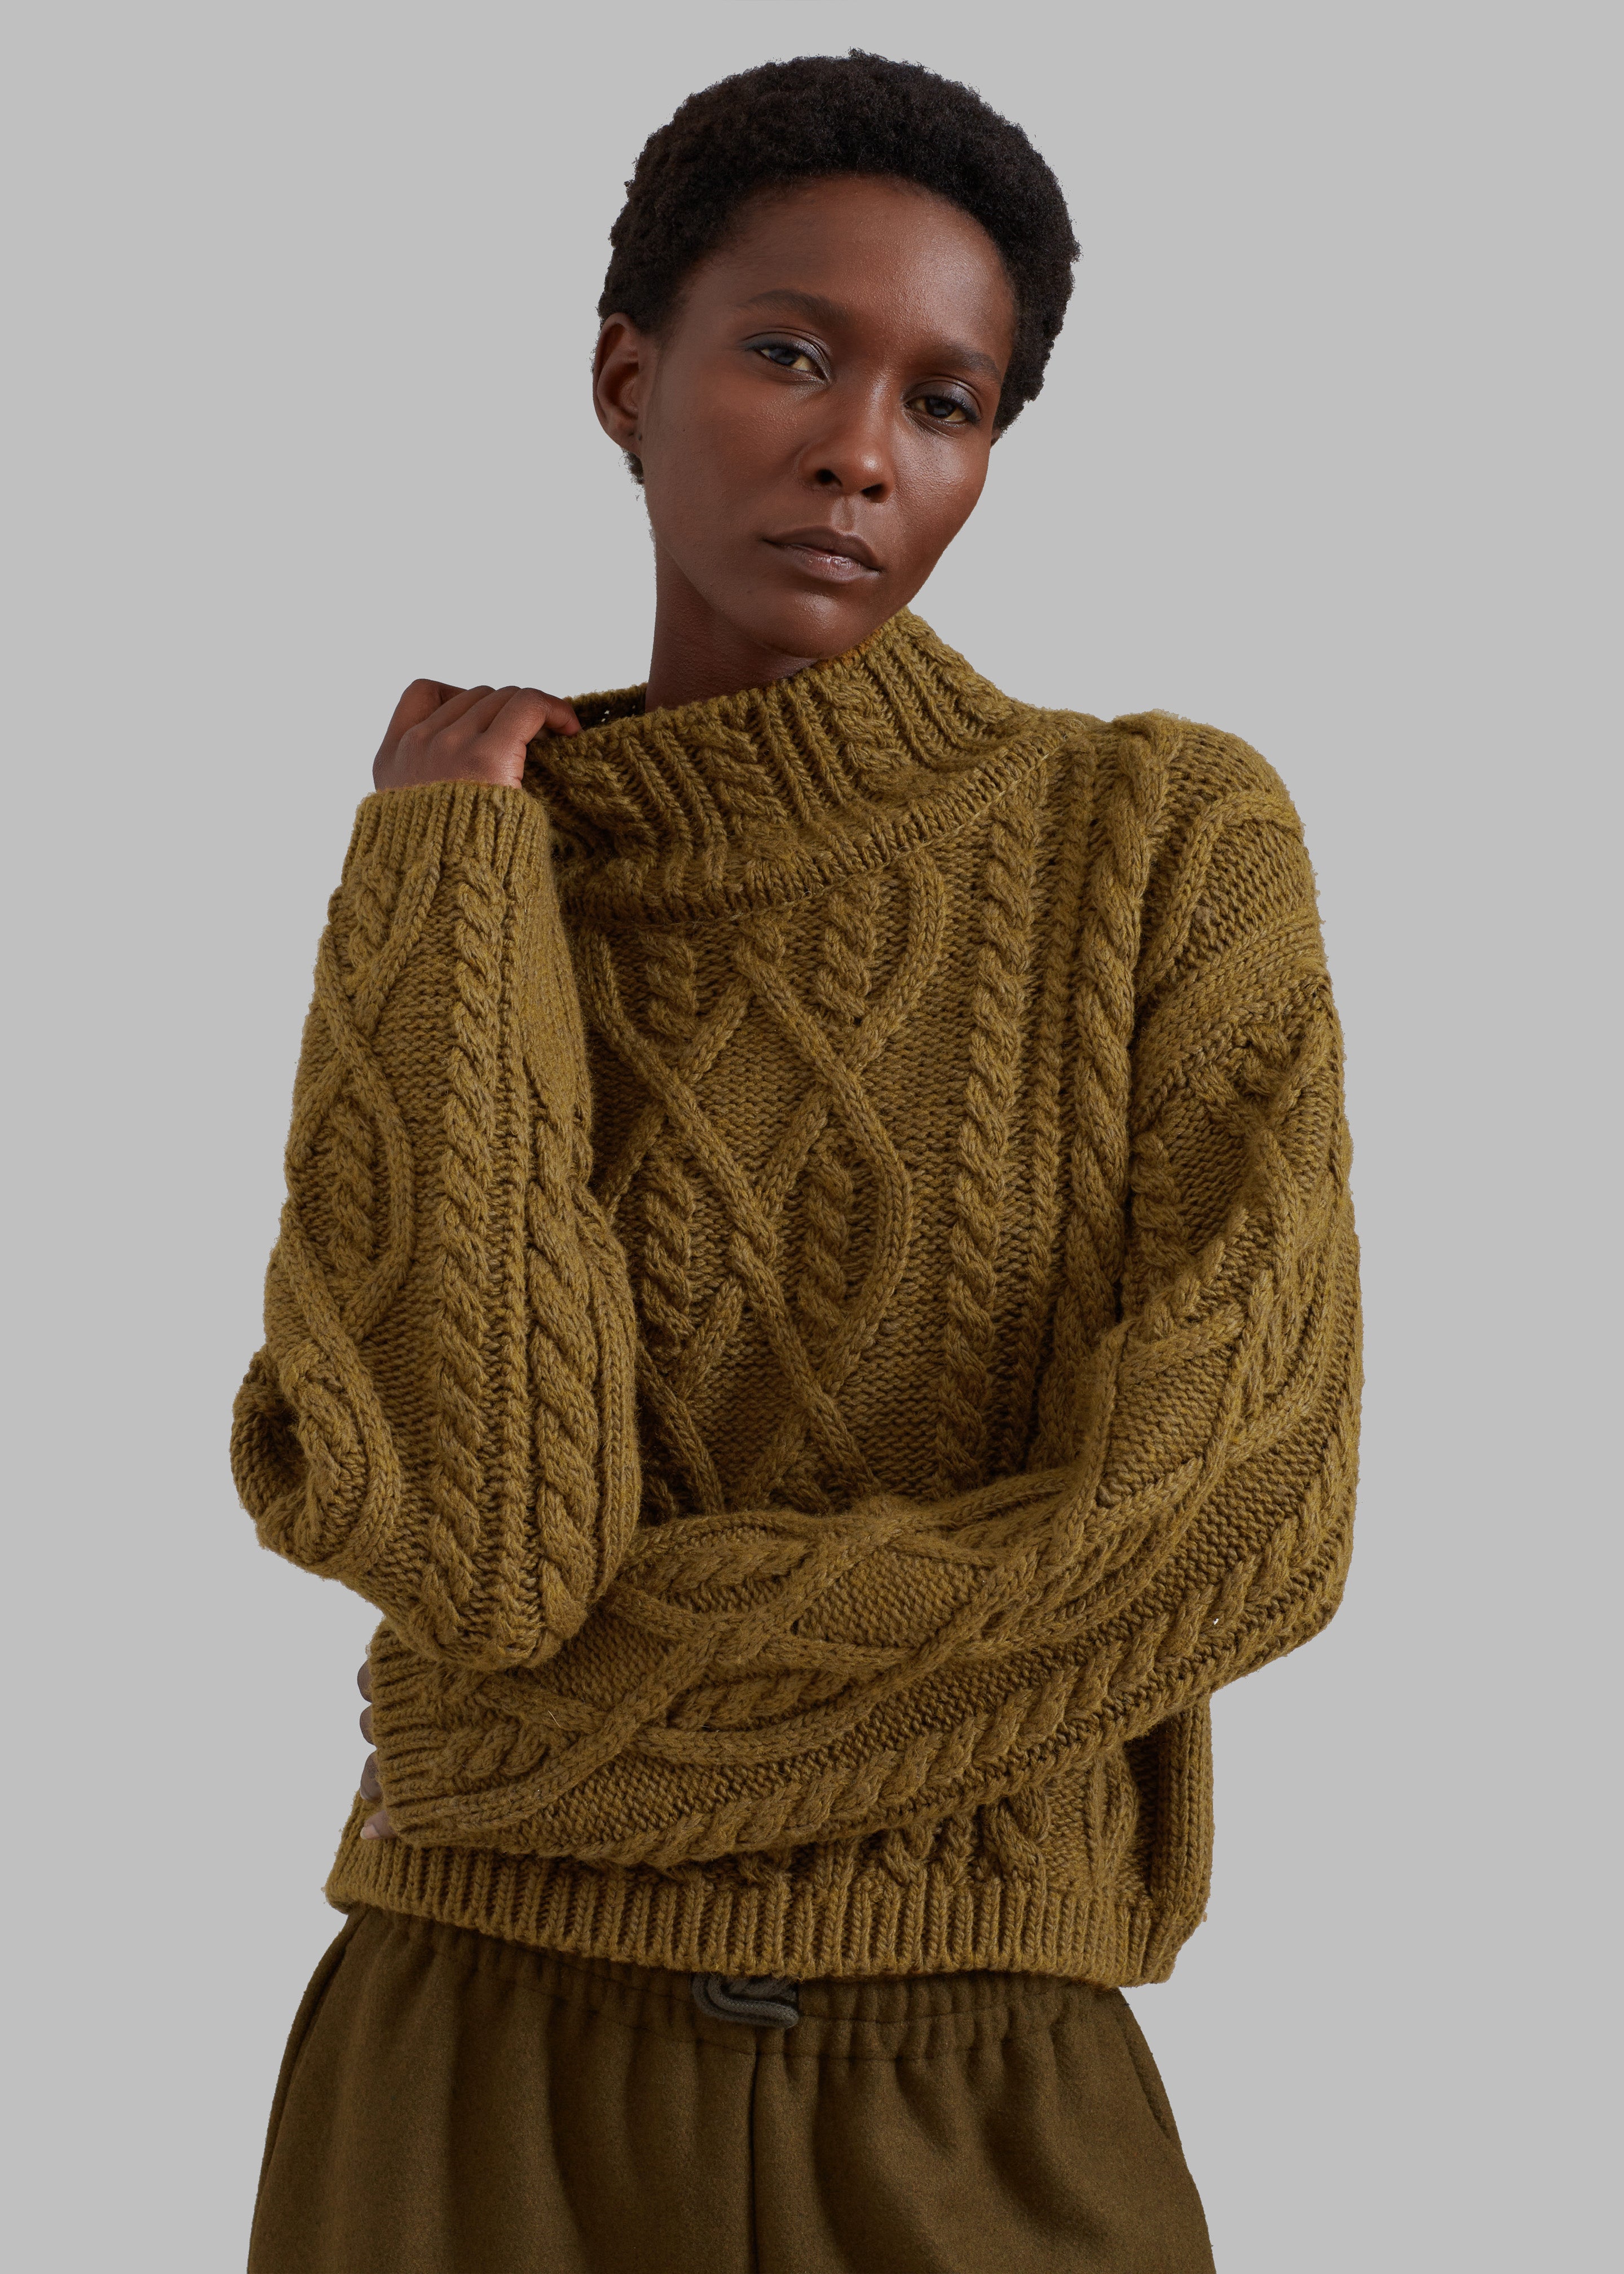 Knit Mock-turtleneck Sweater